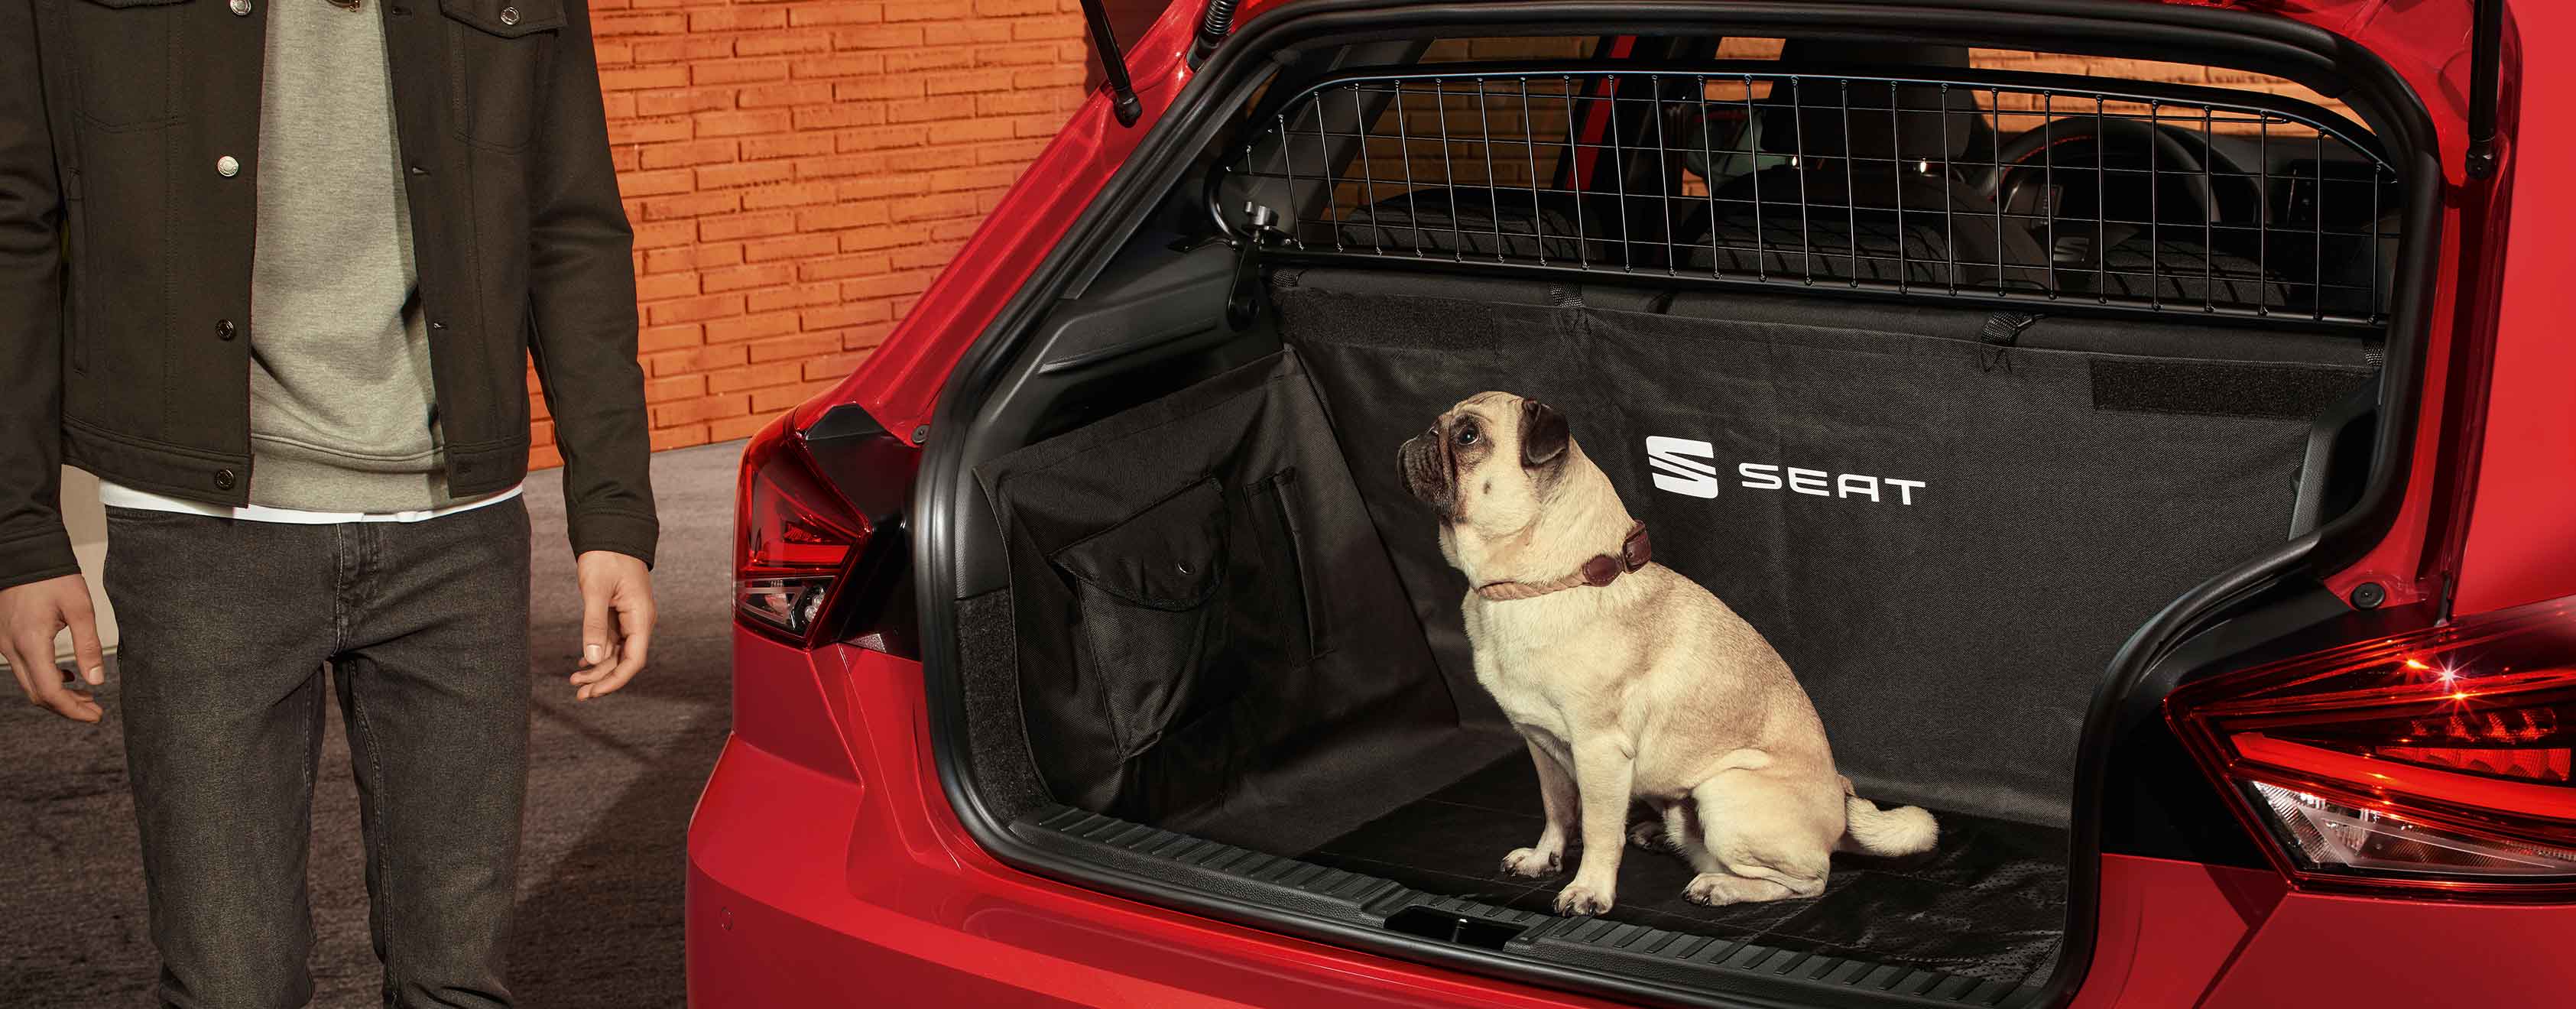 Gos assegut al maleter del SEAT Ibiza amb reixa de separació